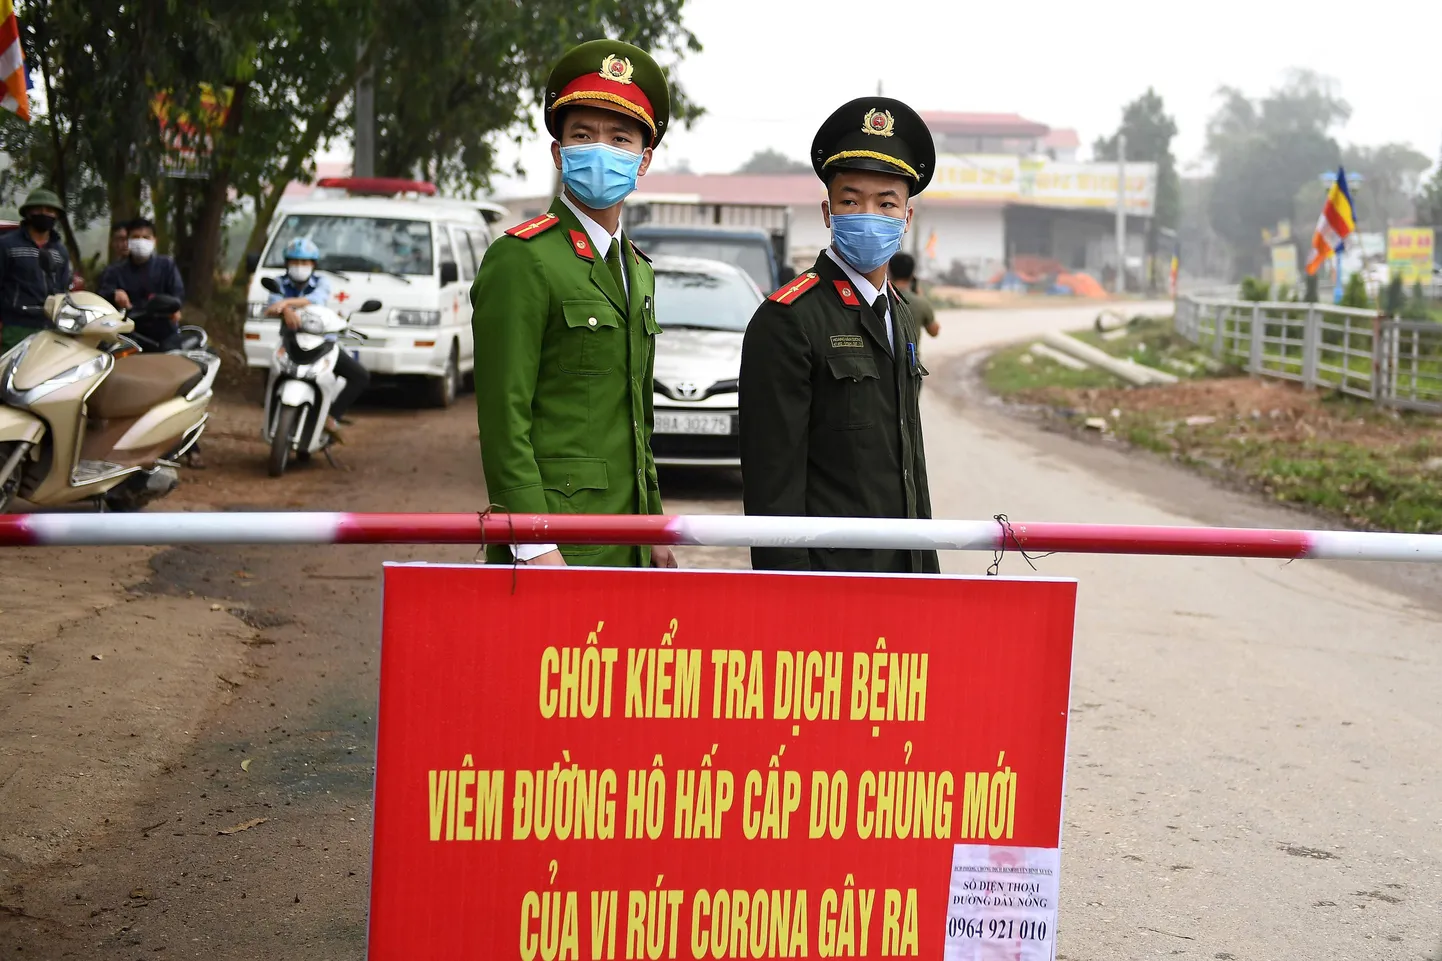 Vietnamis pandi koroonaviiruse COVID-19 tõttu karantiini 10 000 elanikuga kommuun.